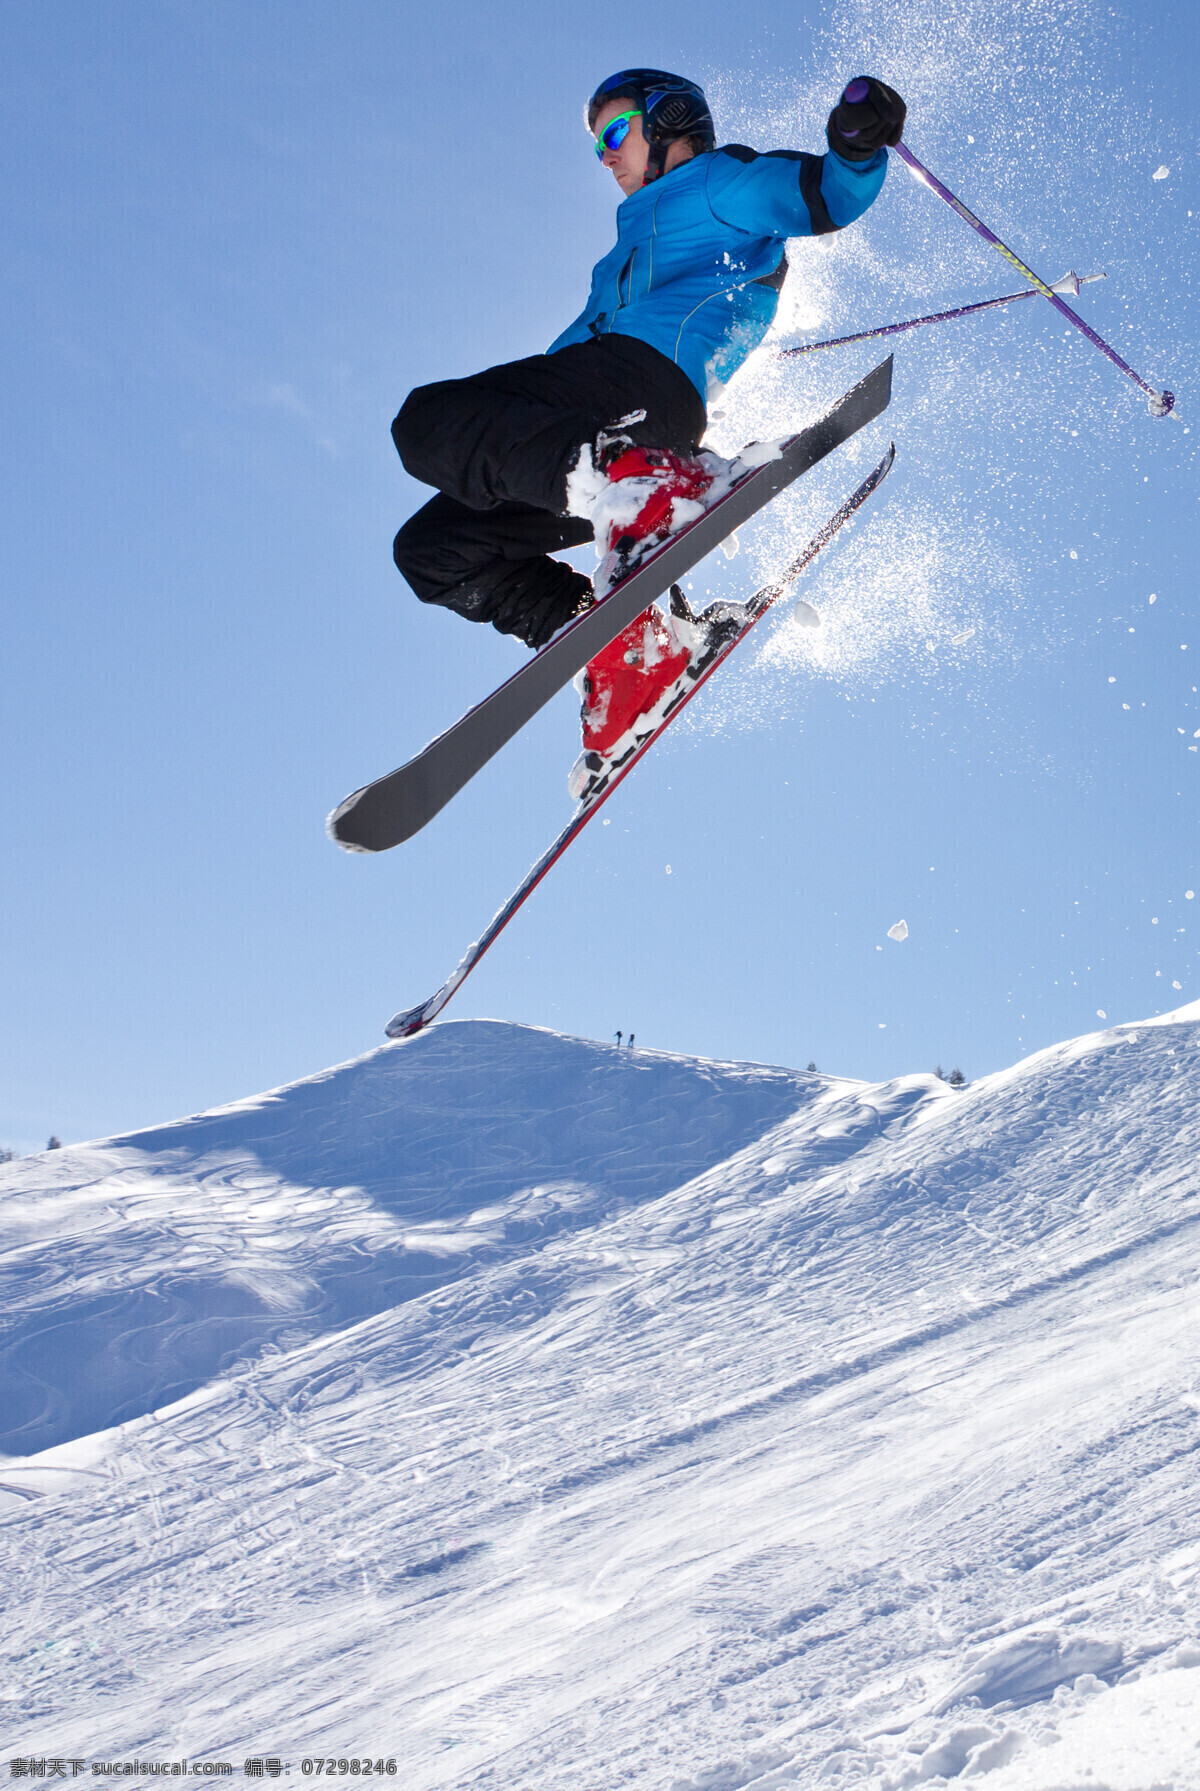 腾空 跳跃 滑雪 运动员 雪地运动 划雪运动 极限运动 体育项目 飞跃 体育运动 生活百科 蓝色